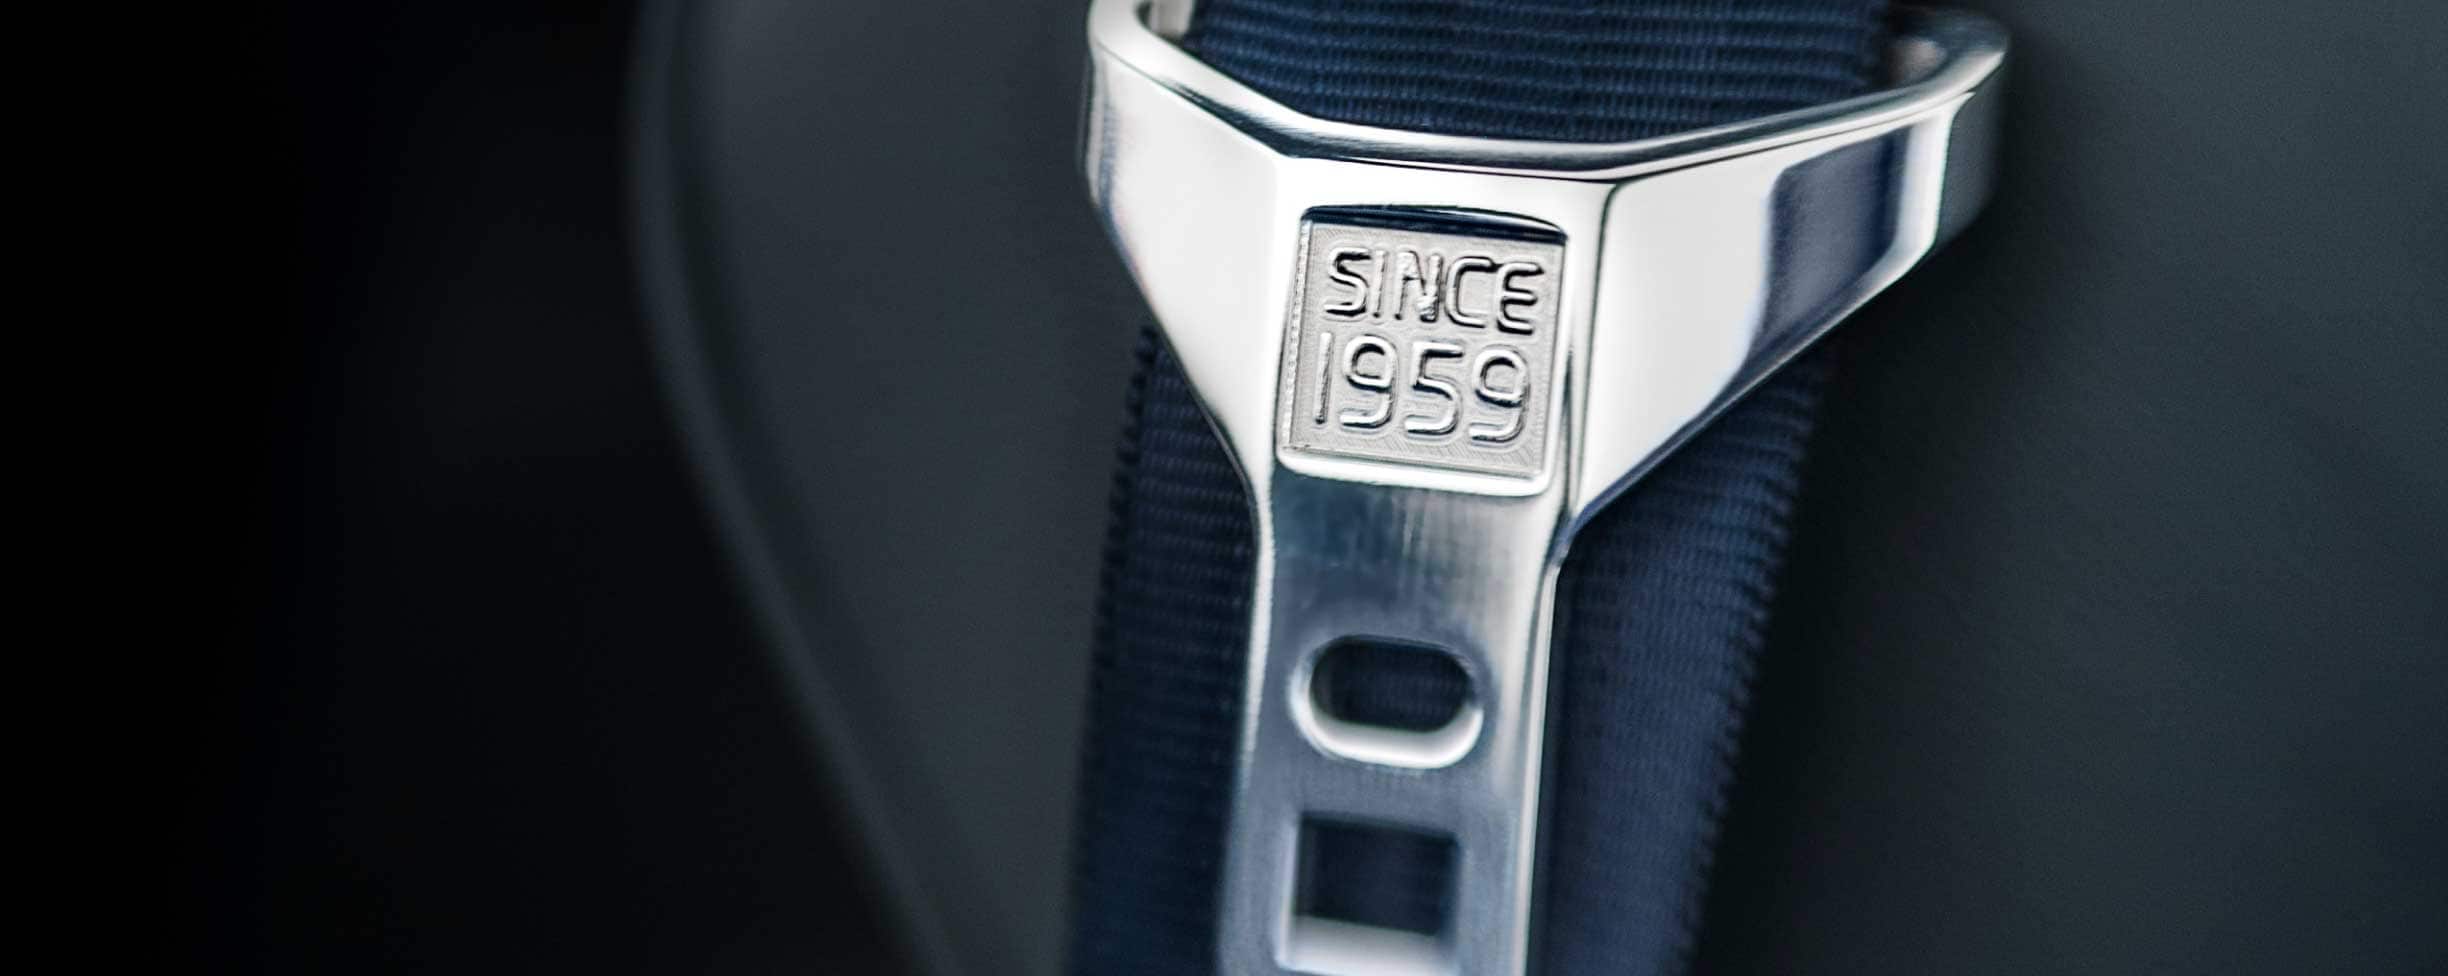 Une ceinture de sécurité grise avec le texte «Since 1959» gravé sur la boucle.